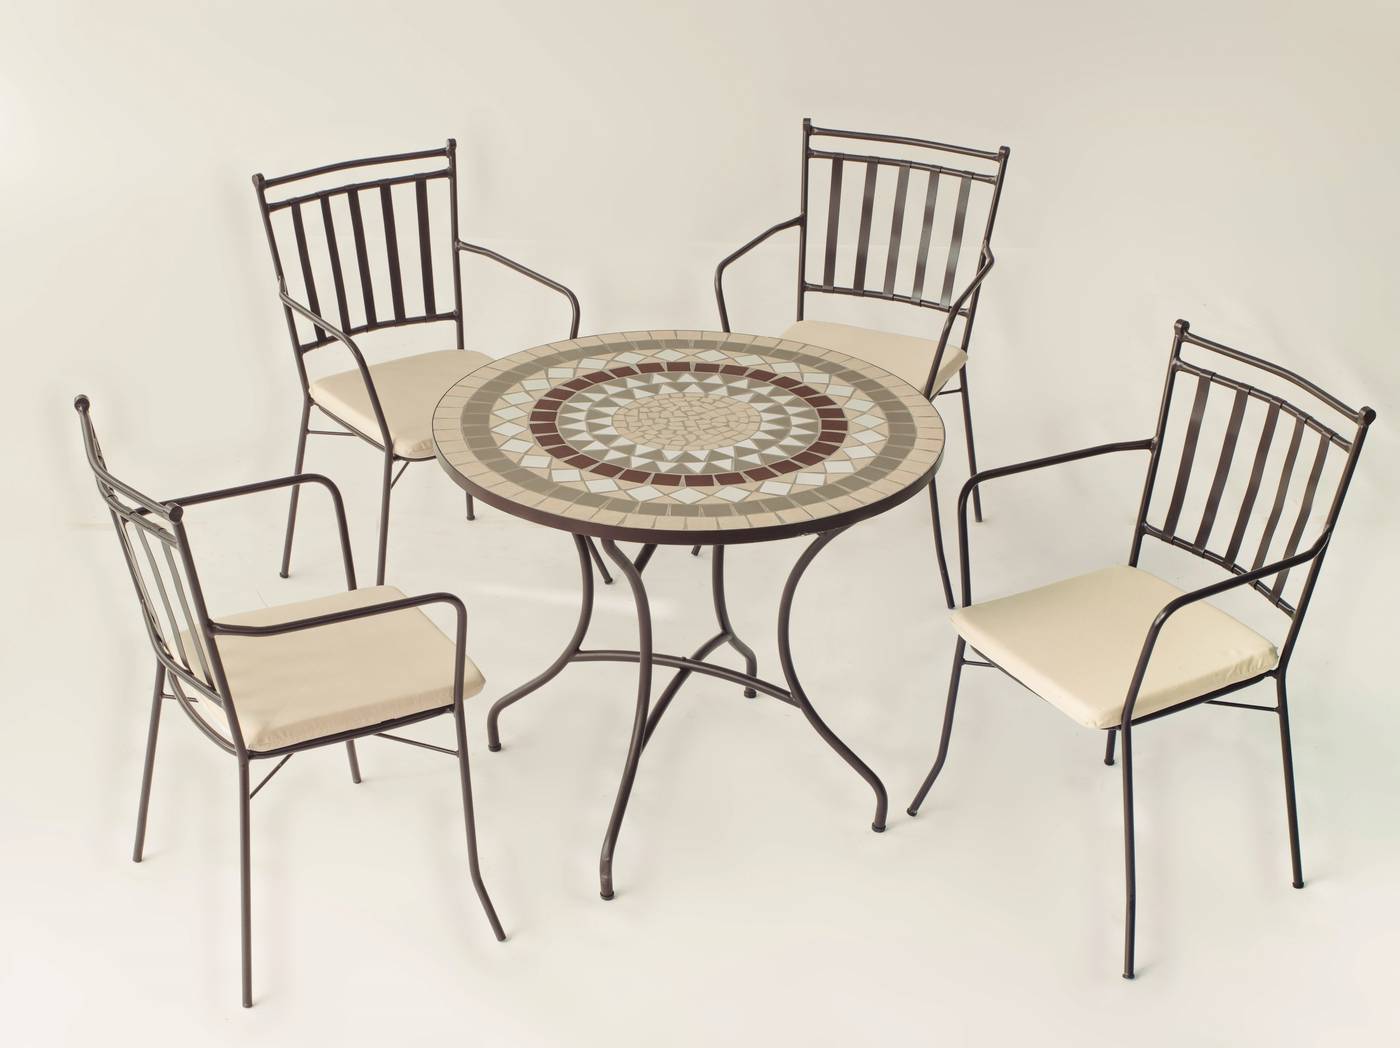 Conjunto de forja color bronce: mesa con tablero mosaico de 90 cm + 4 sillones con cojines asiento.